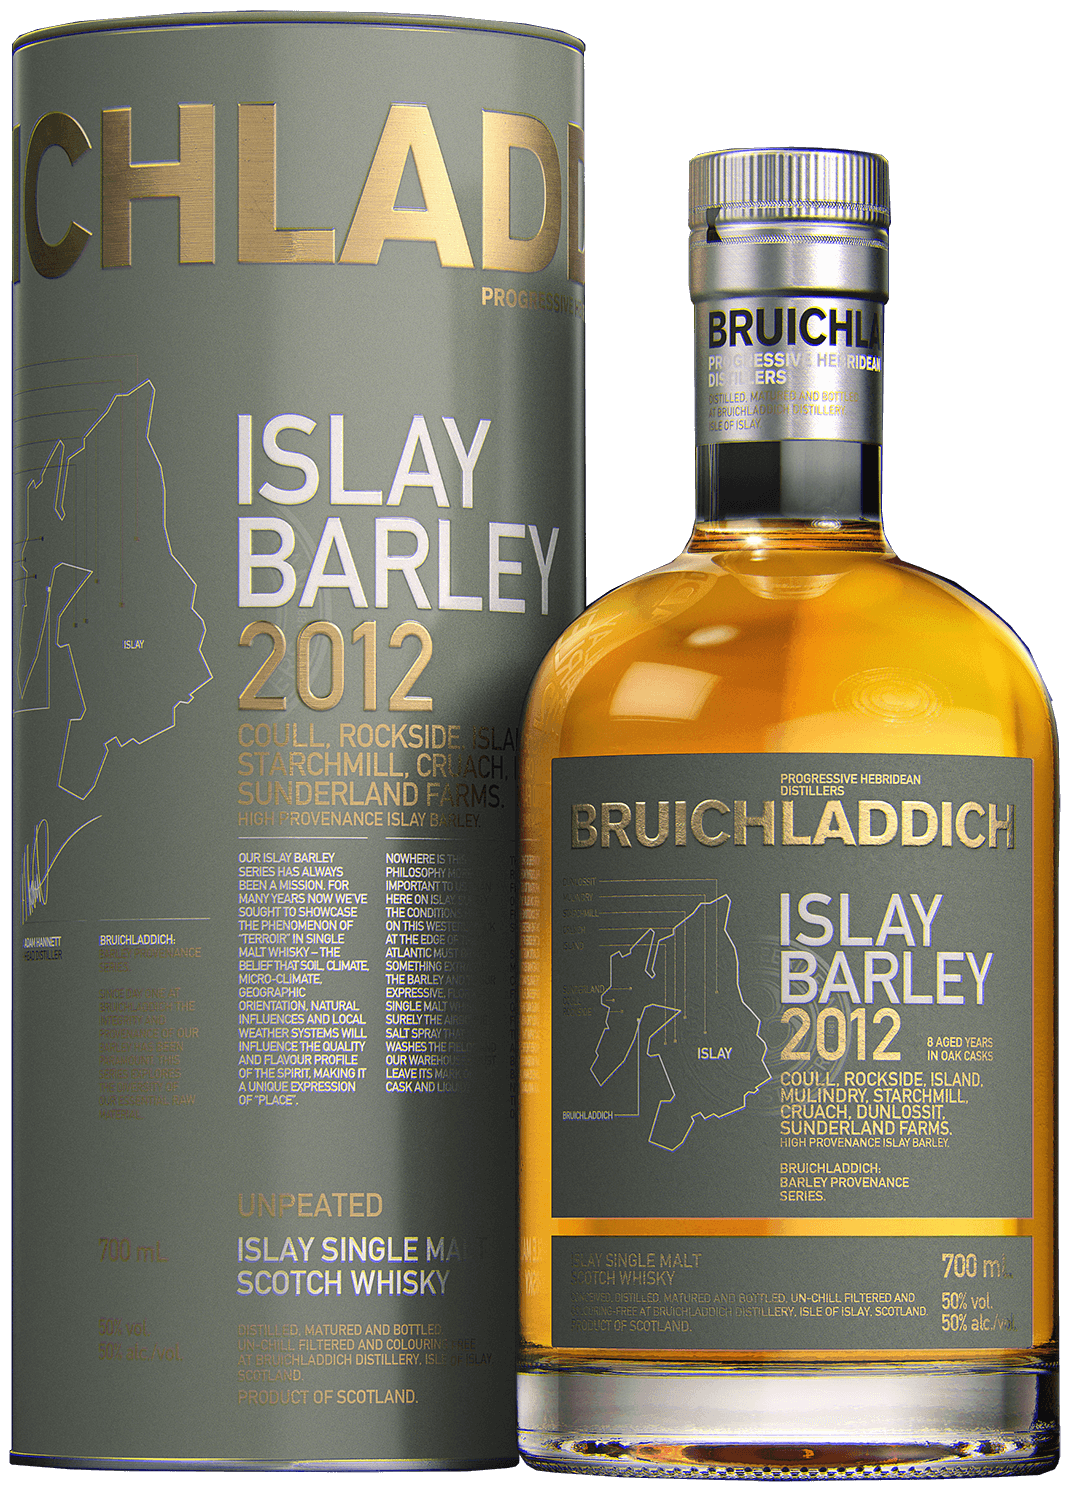 Bruichladdich Islay Barley single malt scotch whisky (gift box) bowmore islay single malt scotch whisky 12 y o gift box